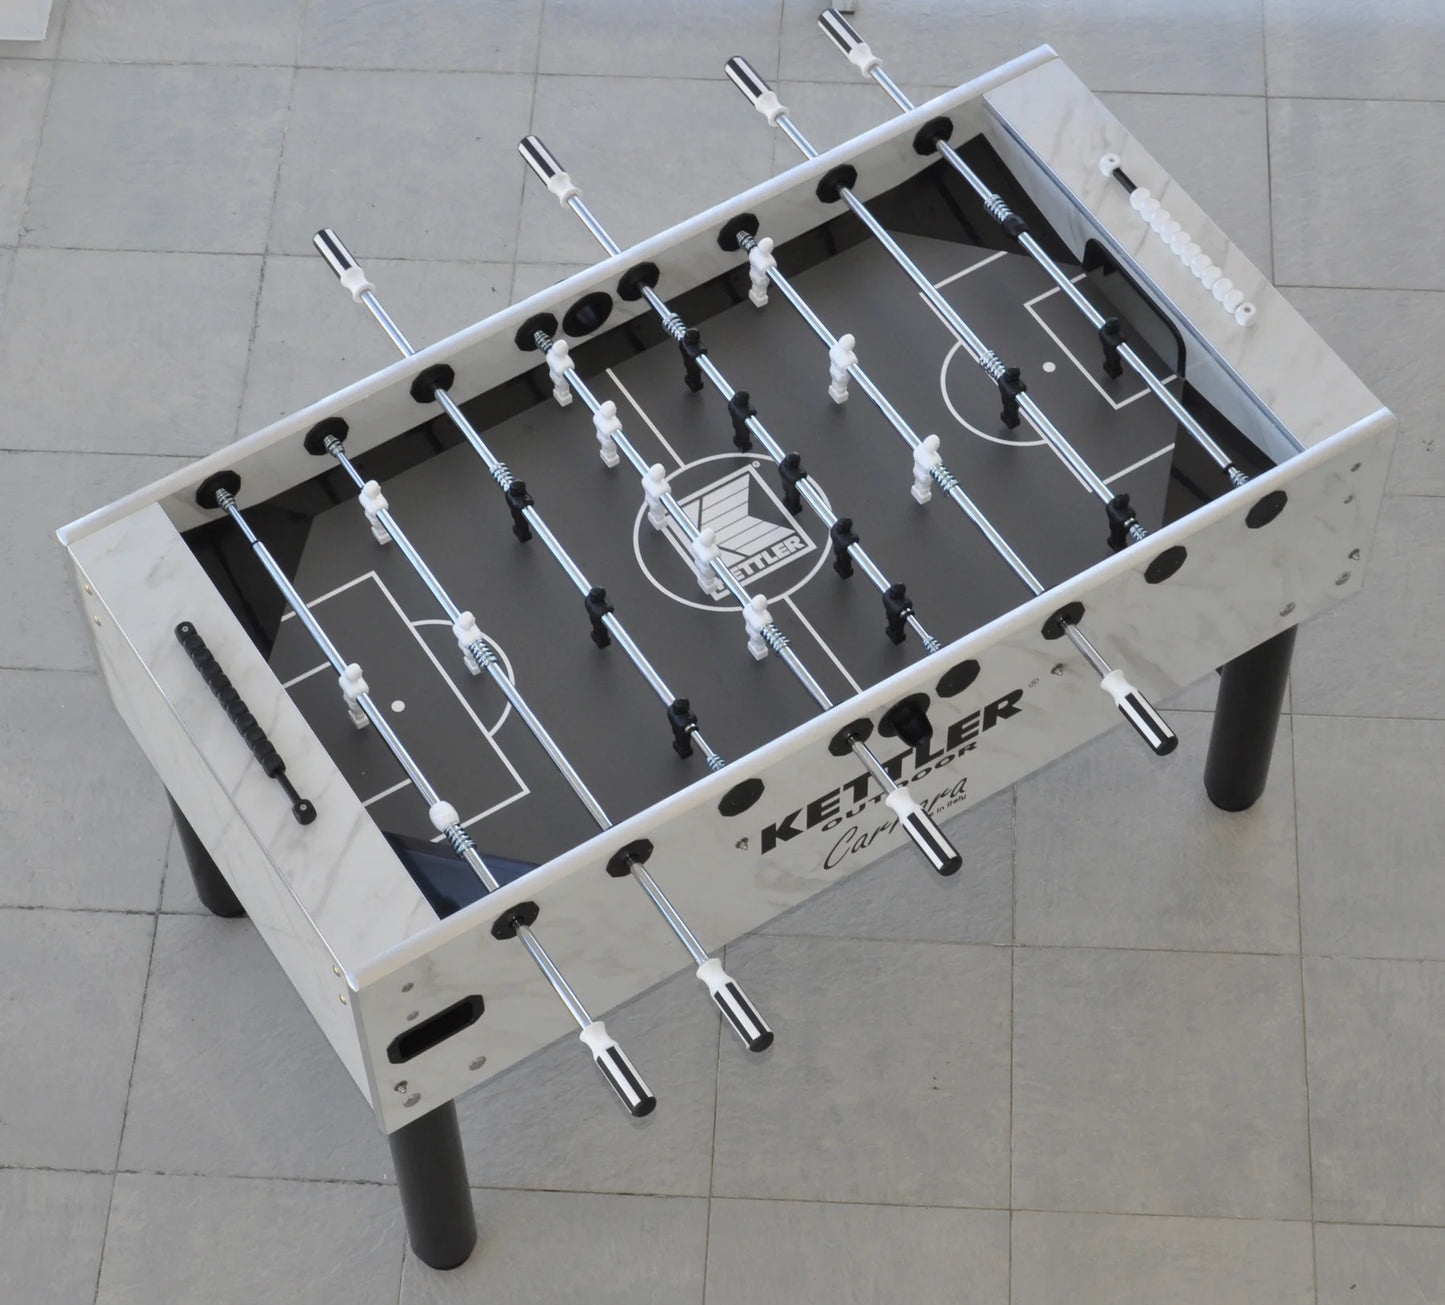 KETTLER Outdoor Carrara Foosball Table - Prime Arcades Inc